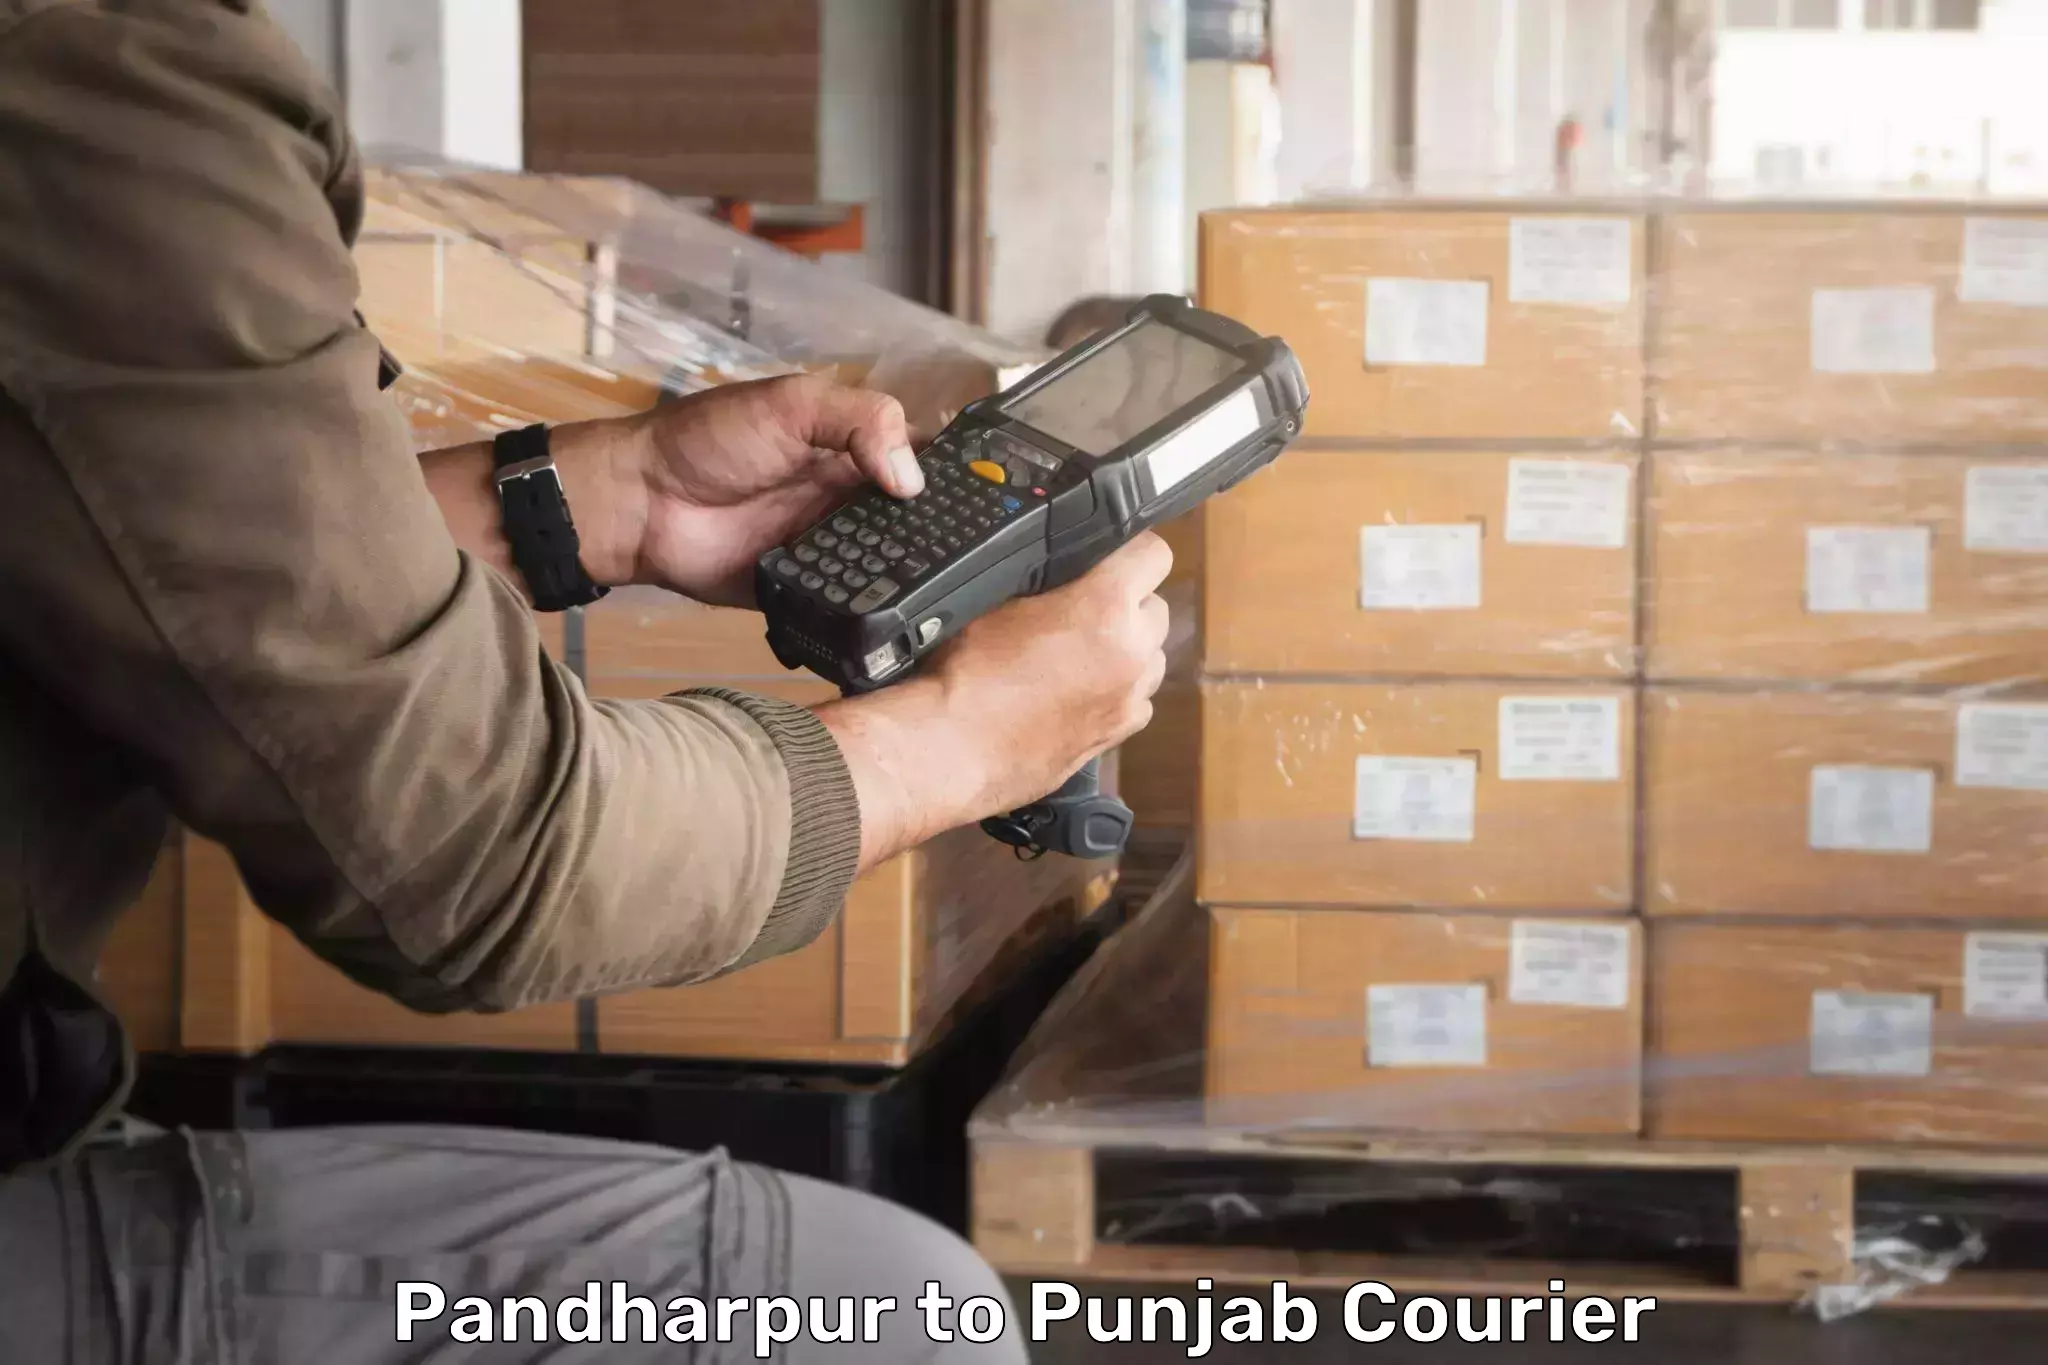 Lightweight courier Pandharpur to Dera Bassi